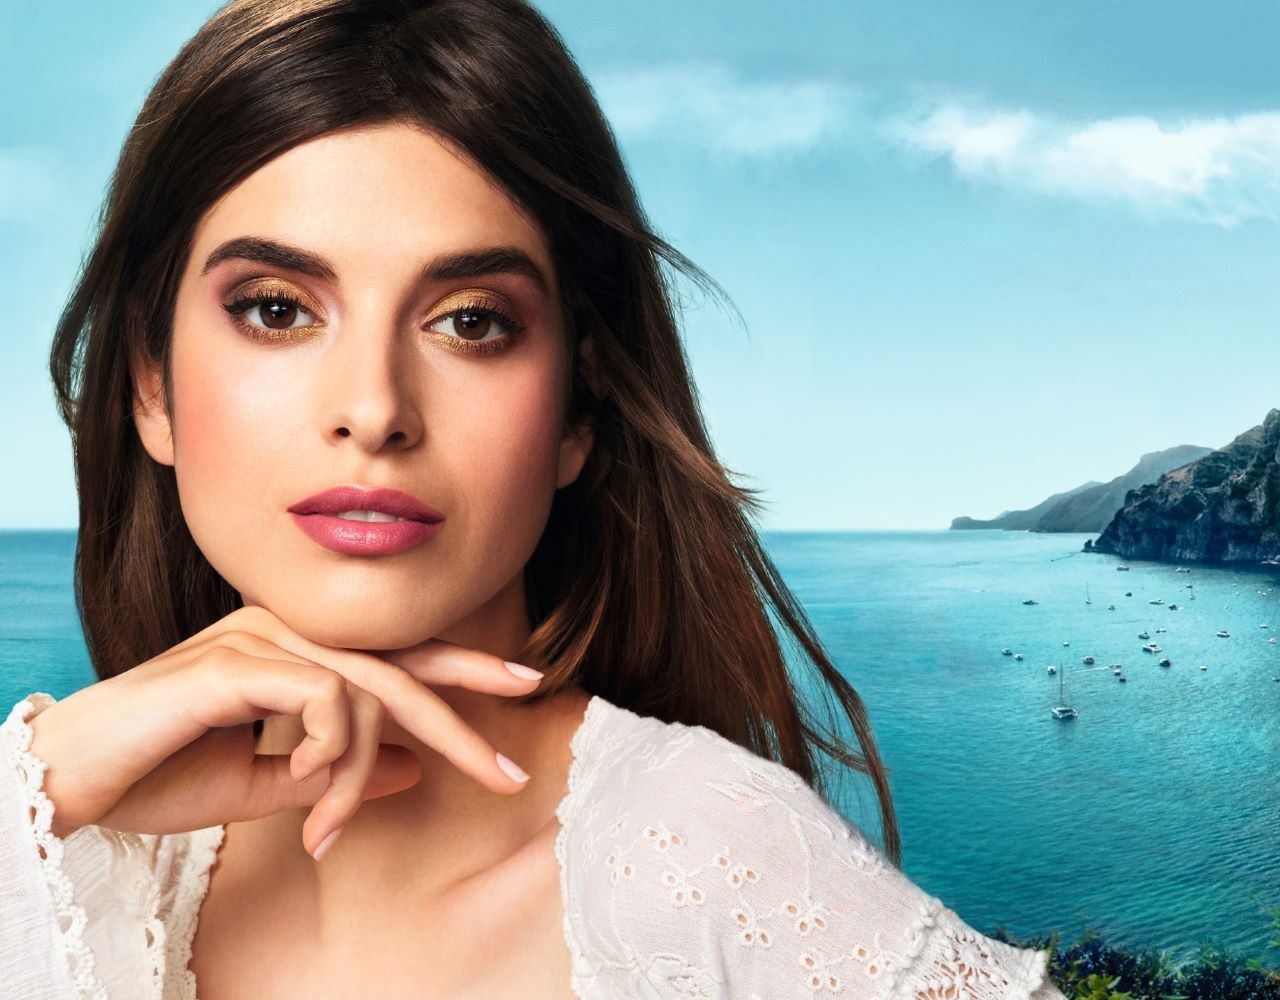 Η KIKO Milano παρουσιάζει τη νέα σειρά προϊόντων μακιγιάζ ”Lost in Amalfi”